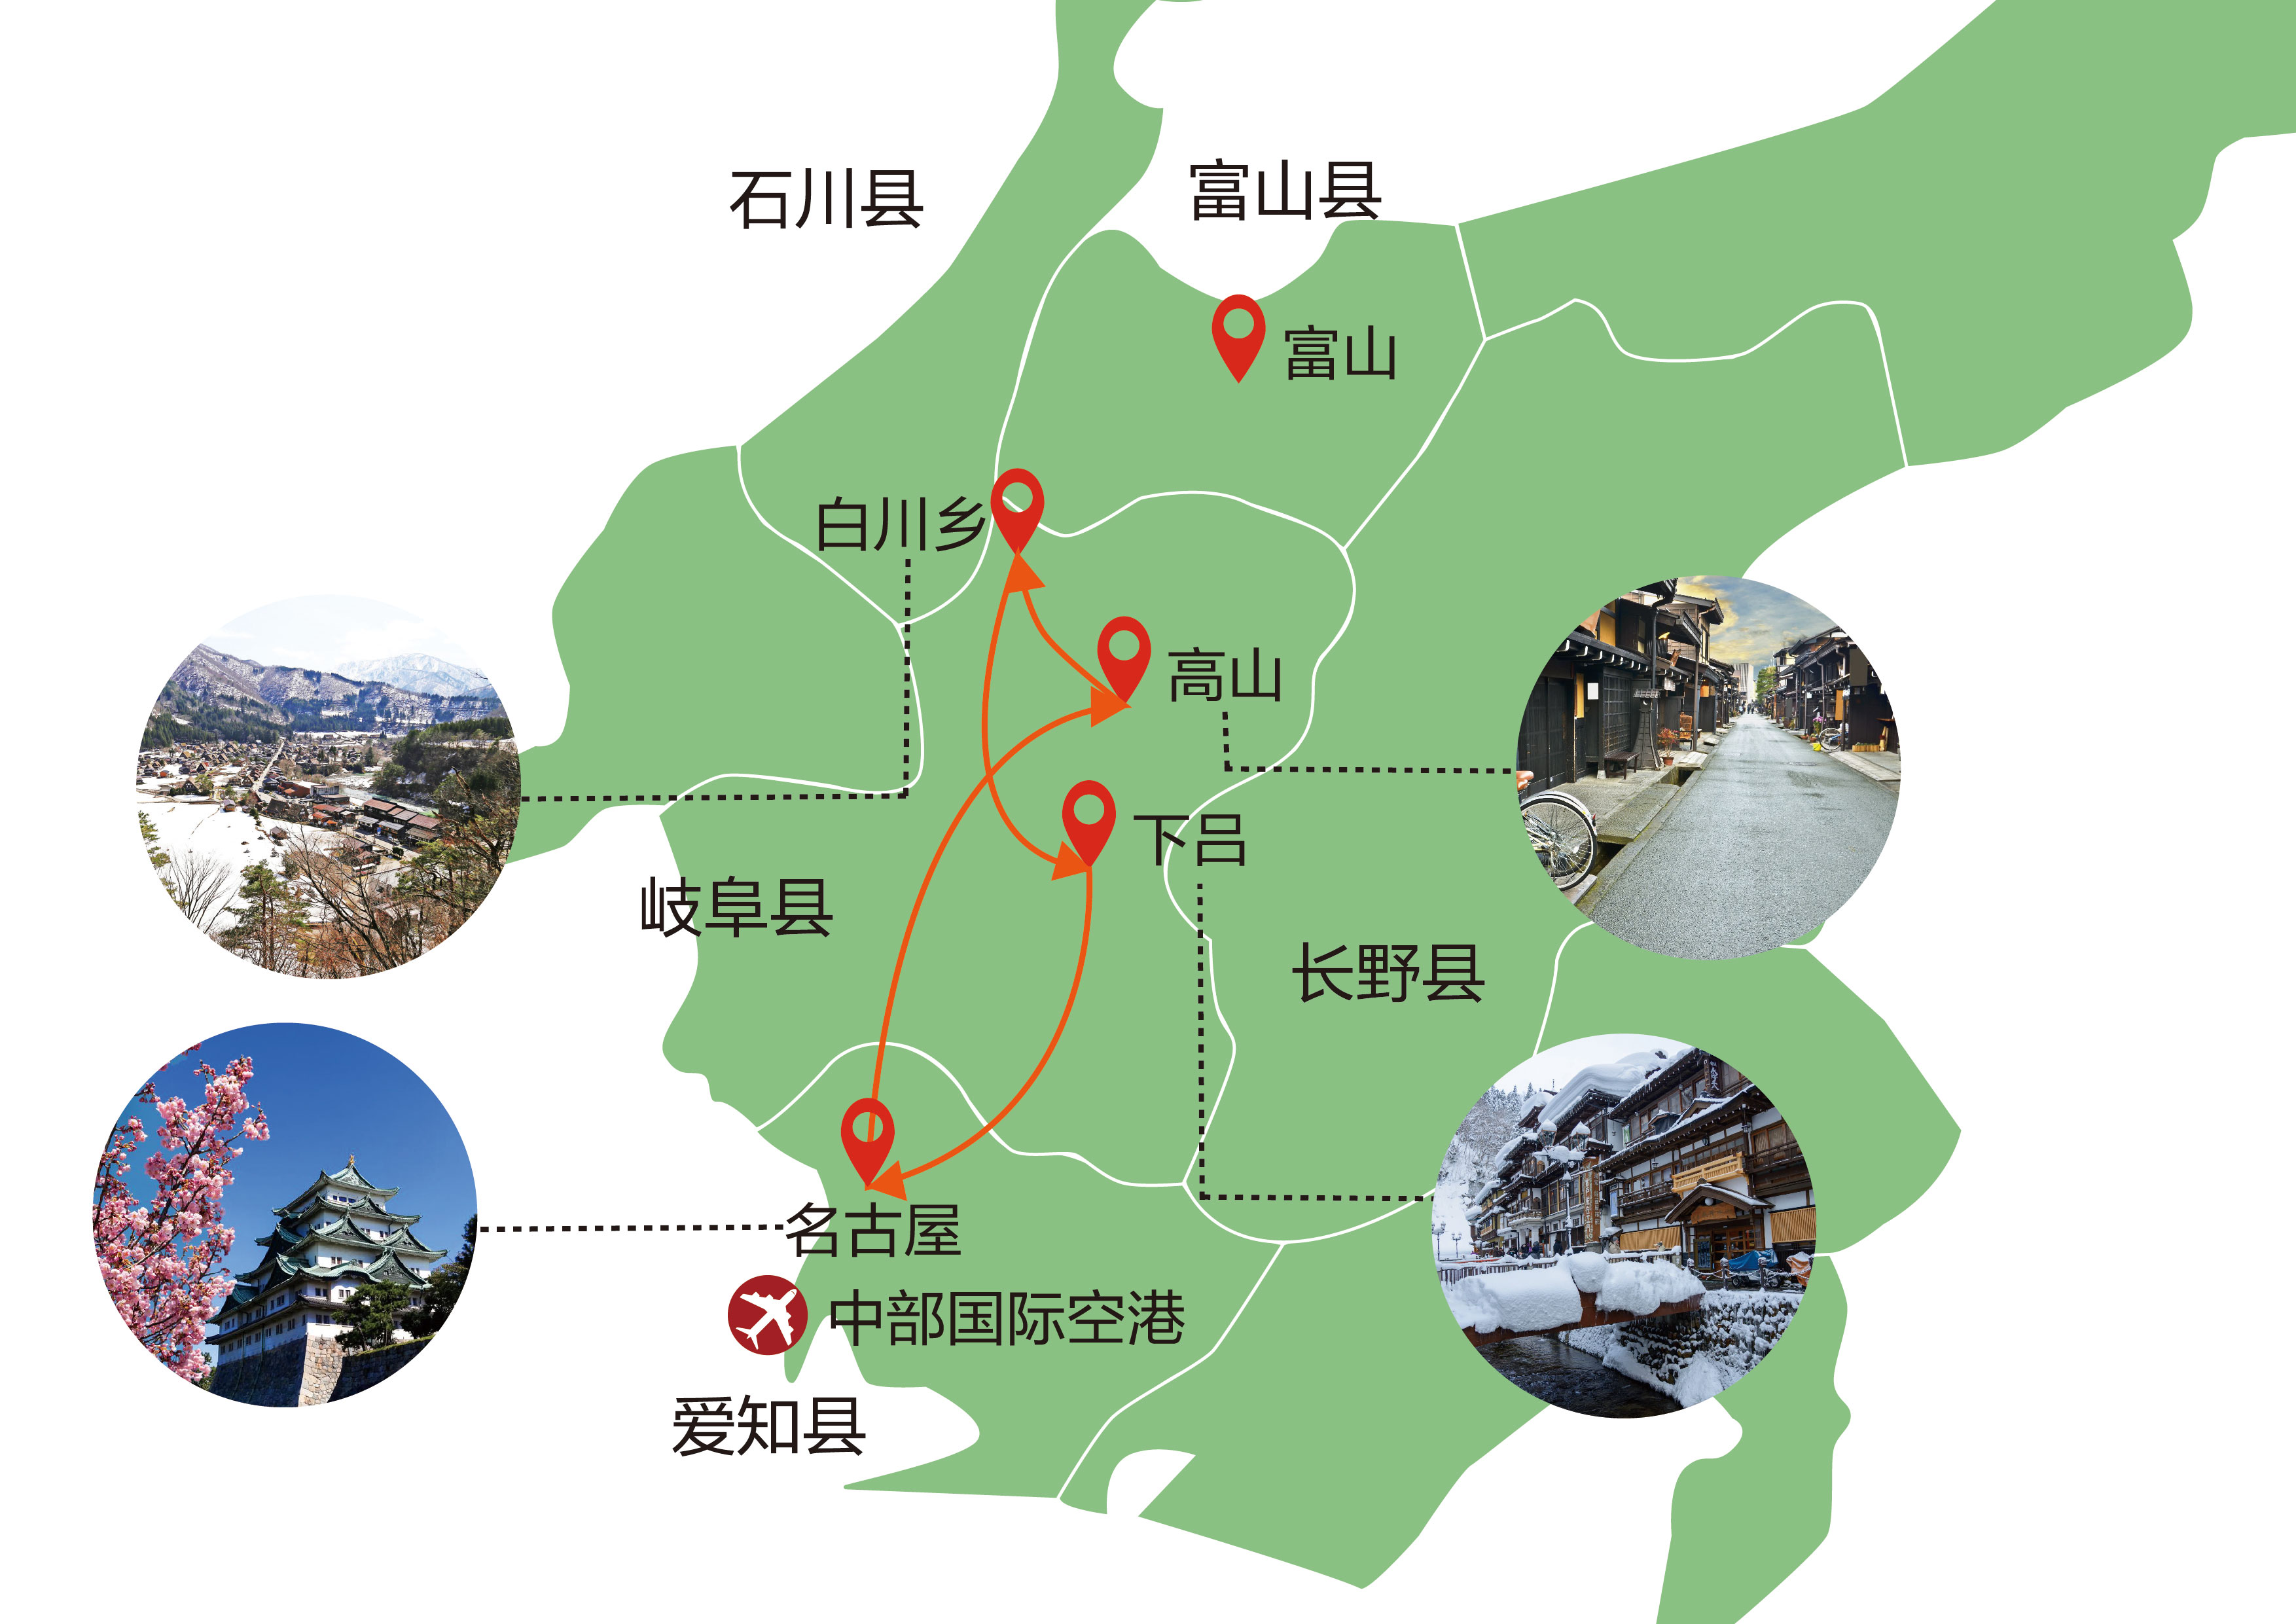 名古屋地理位置图图片